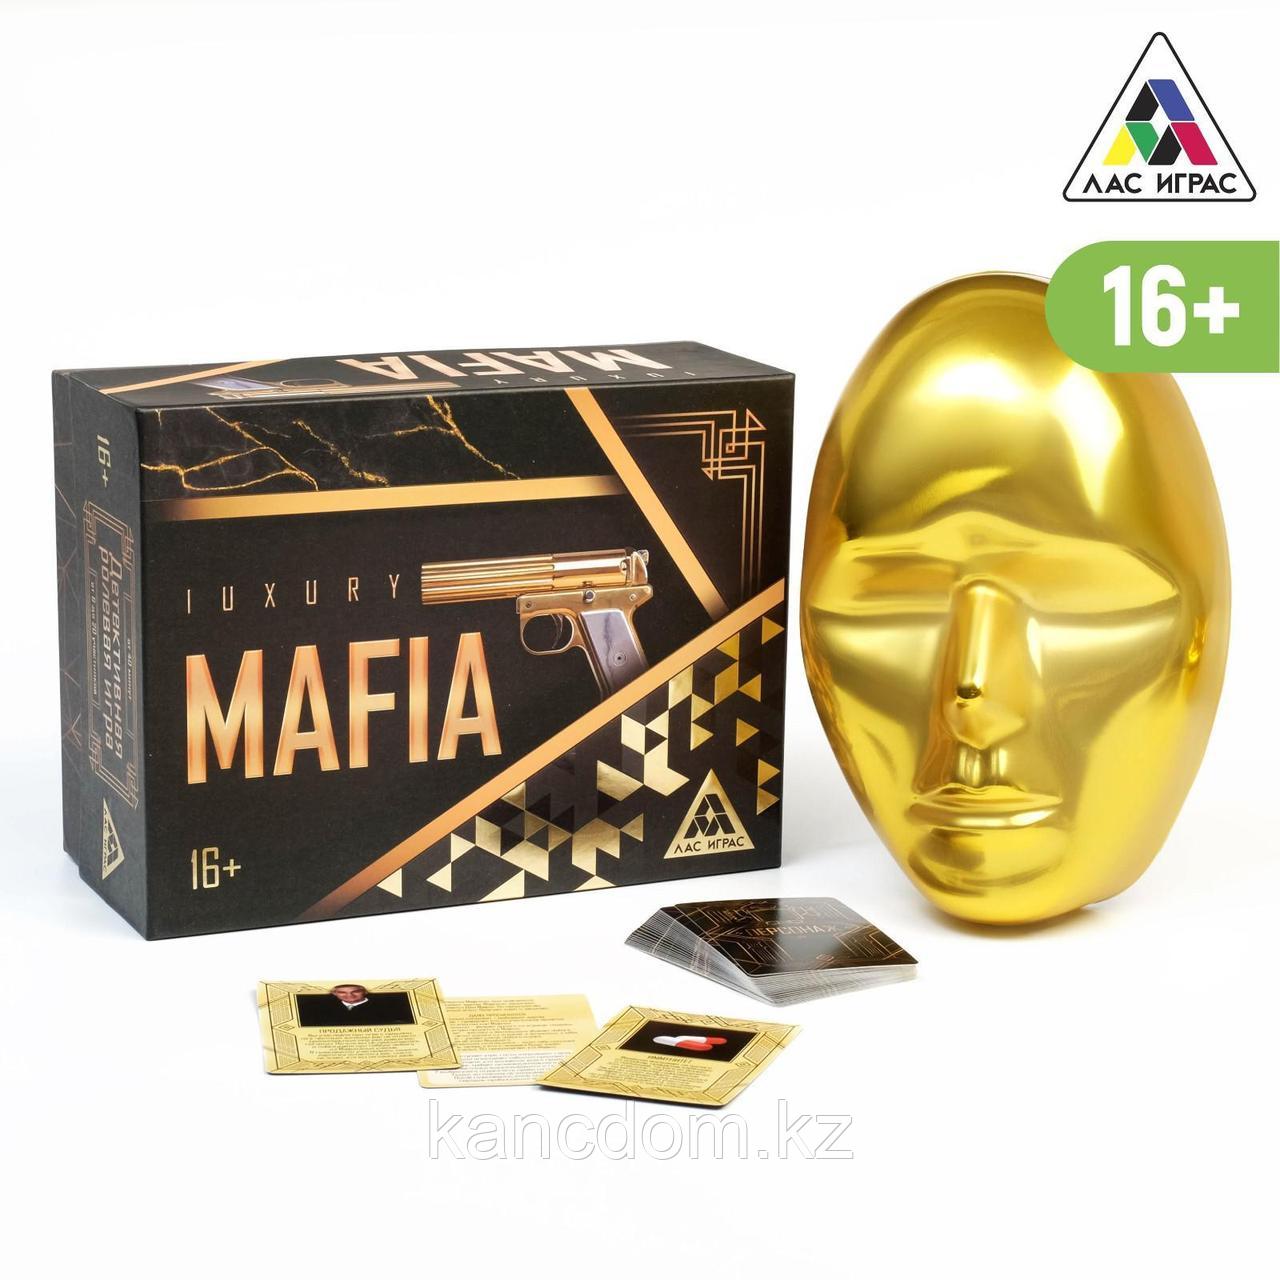 Настольная Ролевая игра «Luxury Мафия» с масками, 36 карт, 16+